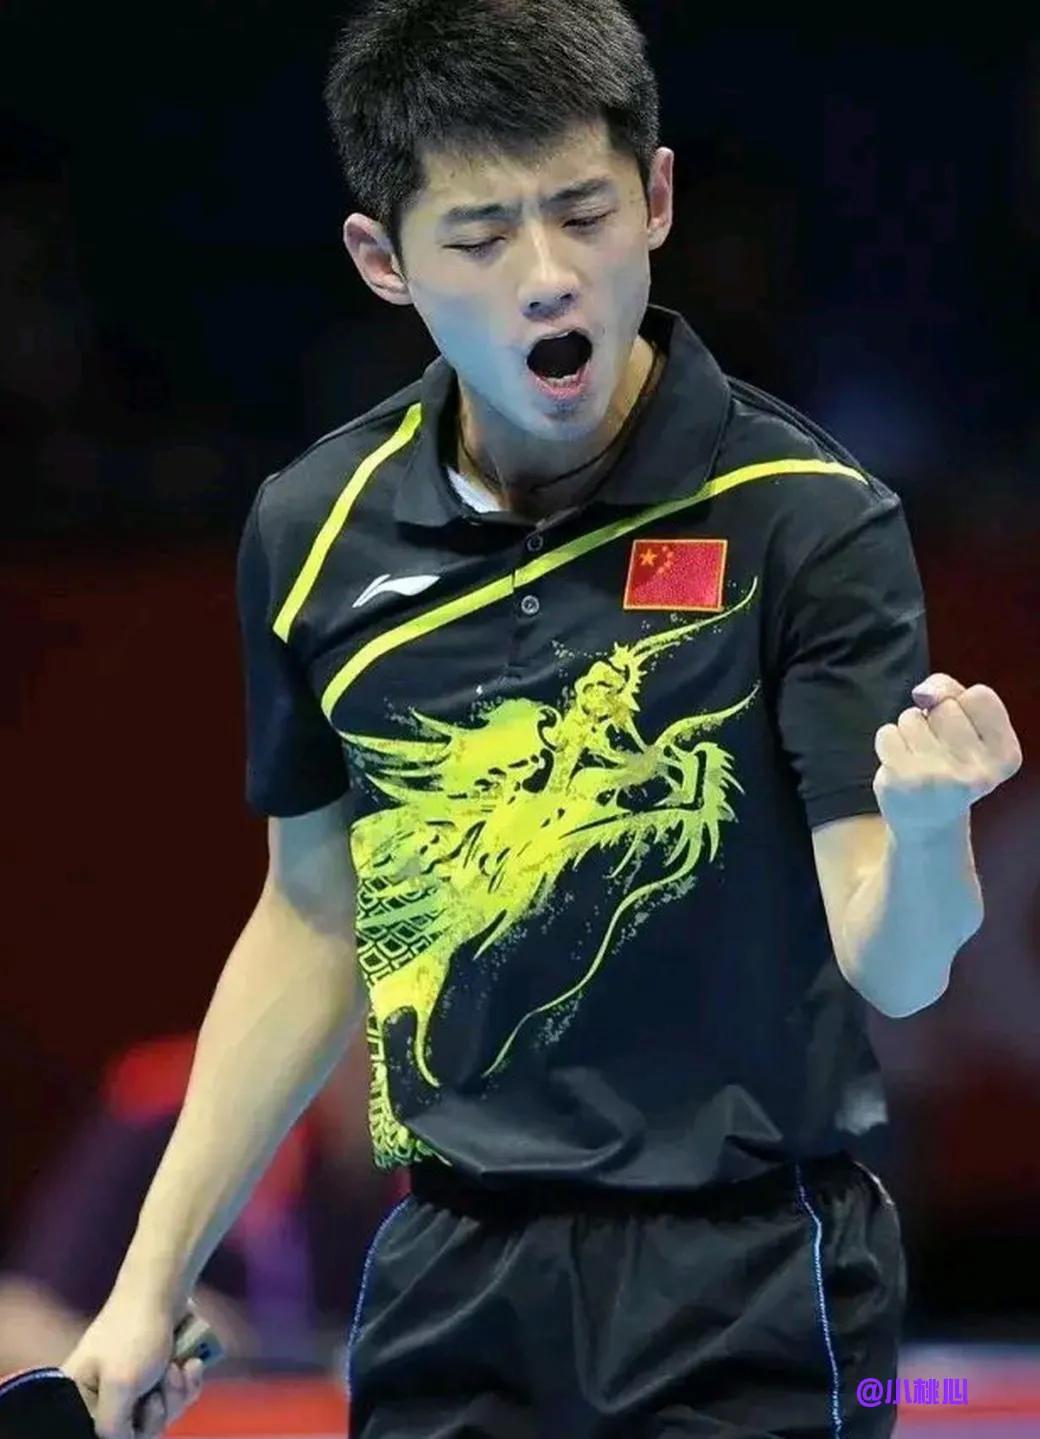 

非常非常的震惊，他是中国男子乒乓球史上第三位大满贯选手，也是乒乓球史上第七位(2)